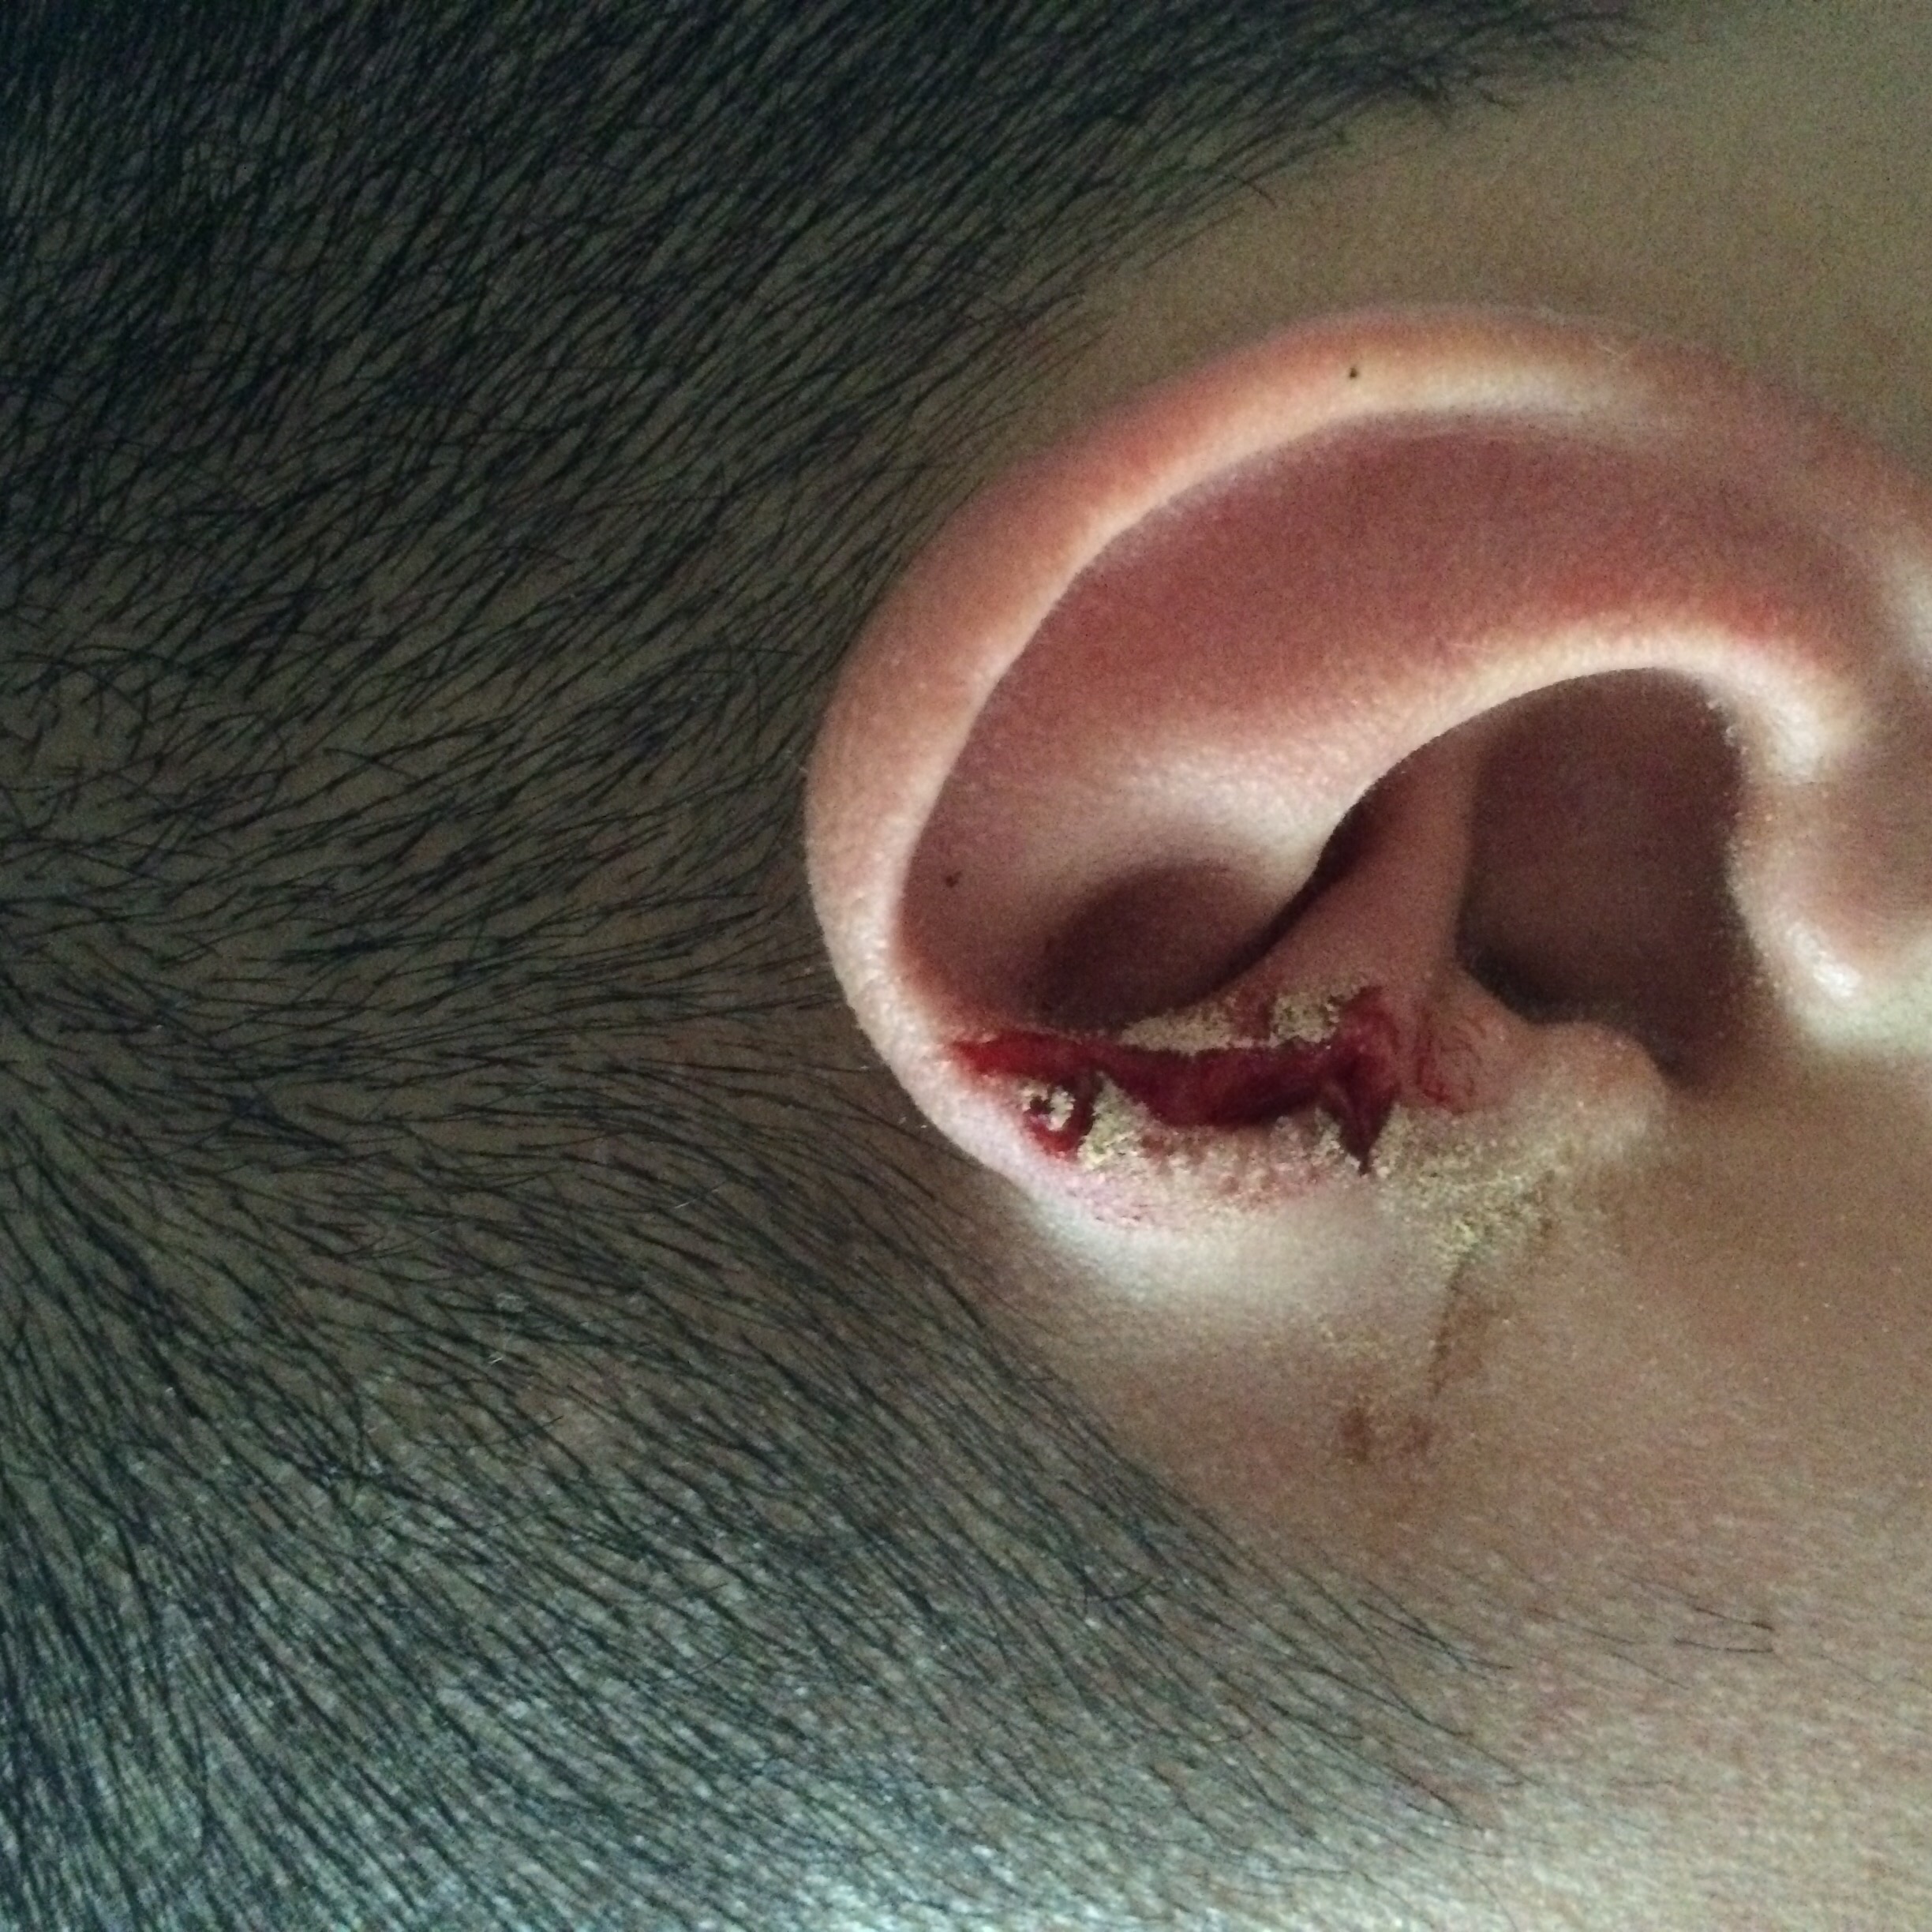 耳朵被钉子划伤,问题严重吗?需要怎么处理呢